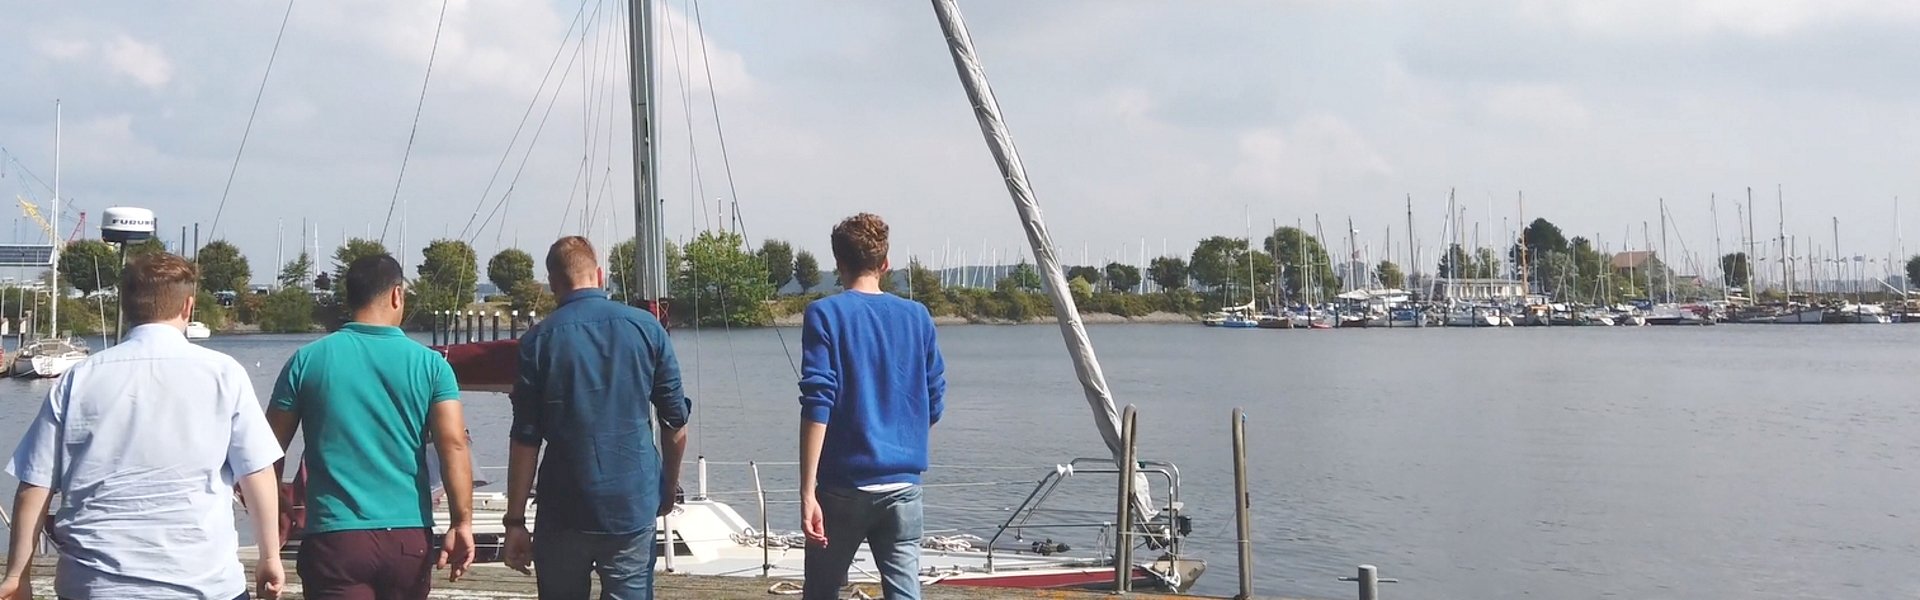 Vier GMSH-Studenten gehen am Kieler Yachthafen entlang. Im Hintergrund ist Wasser und ein Segelboot zu sehen. 